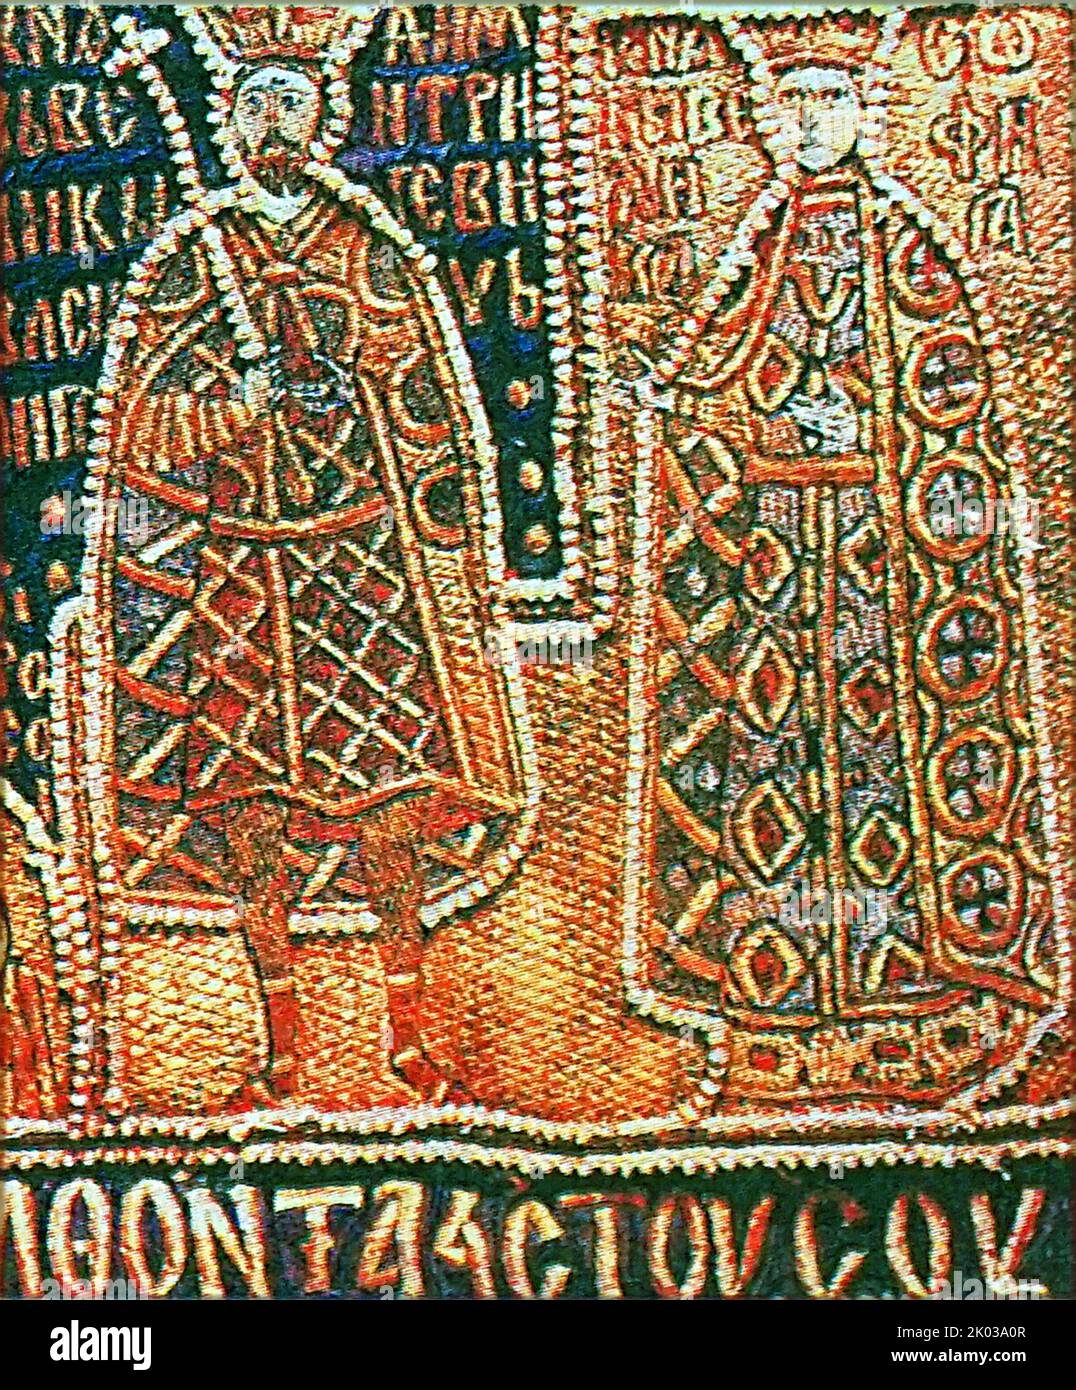 Basilio I de Moscú y Sofía de Lituania. Vasily I Dmitriyevich (1371 - 1425) fue el Gran Príncipe de Moscú (r. 1389--1425), había entrado en alianza con el Gran Ducado de Lituania en 1392 y se había casado con la única hija de Vitautas la Grande, Sofía Foto de stock